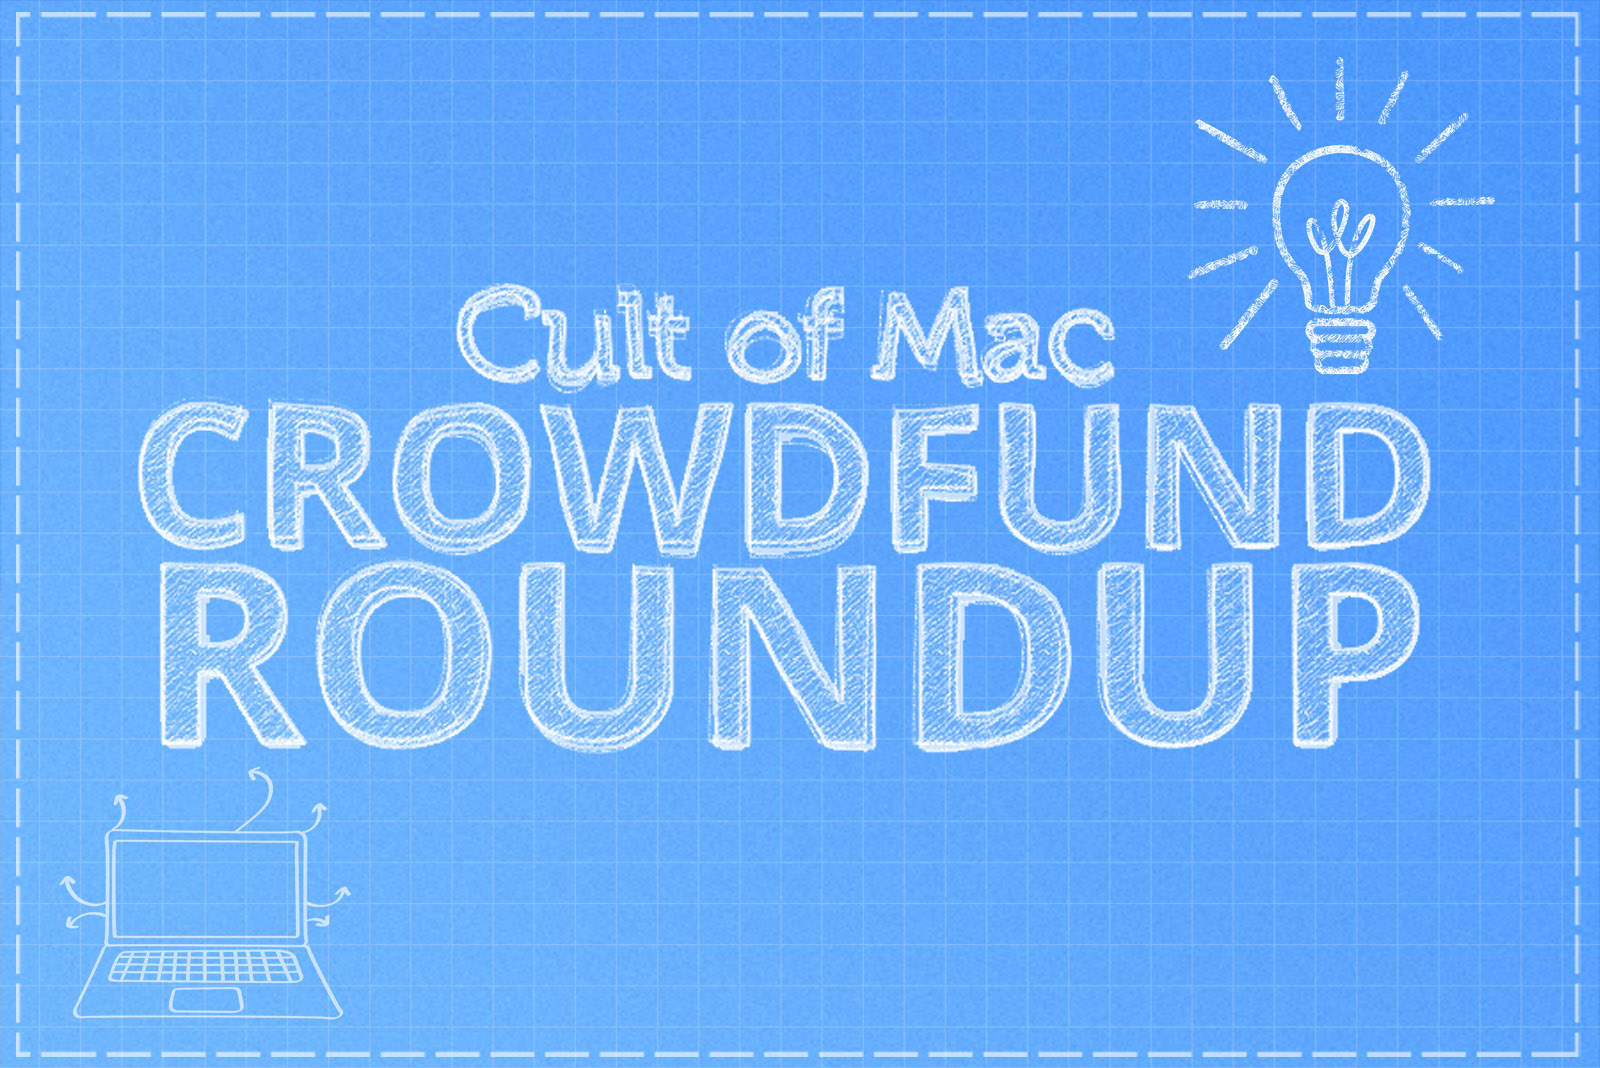 Crowdfund Roundup